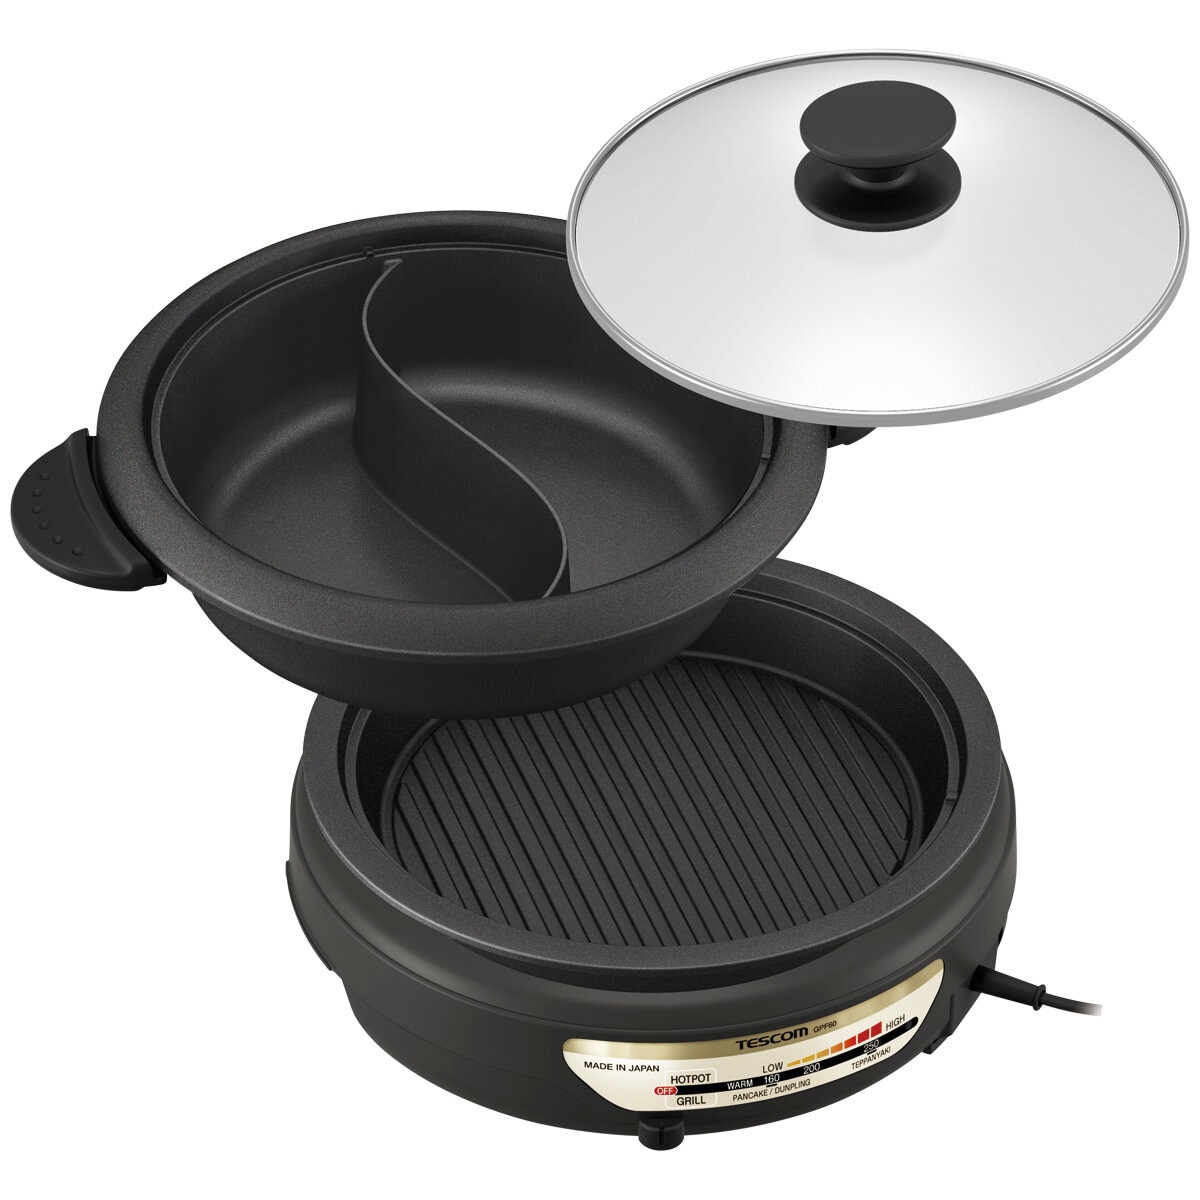 Tescom GPF60 Hot Pot Grill Slow Cooker